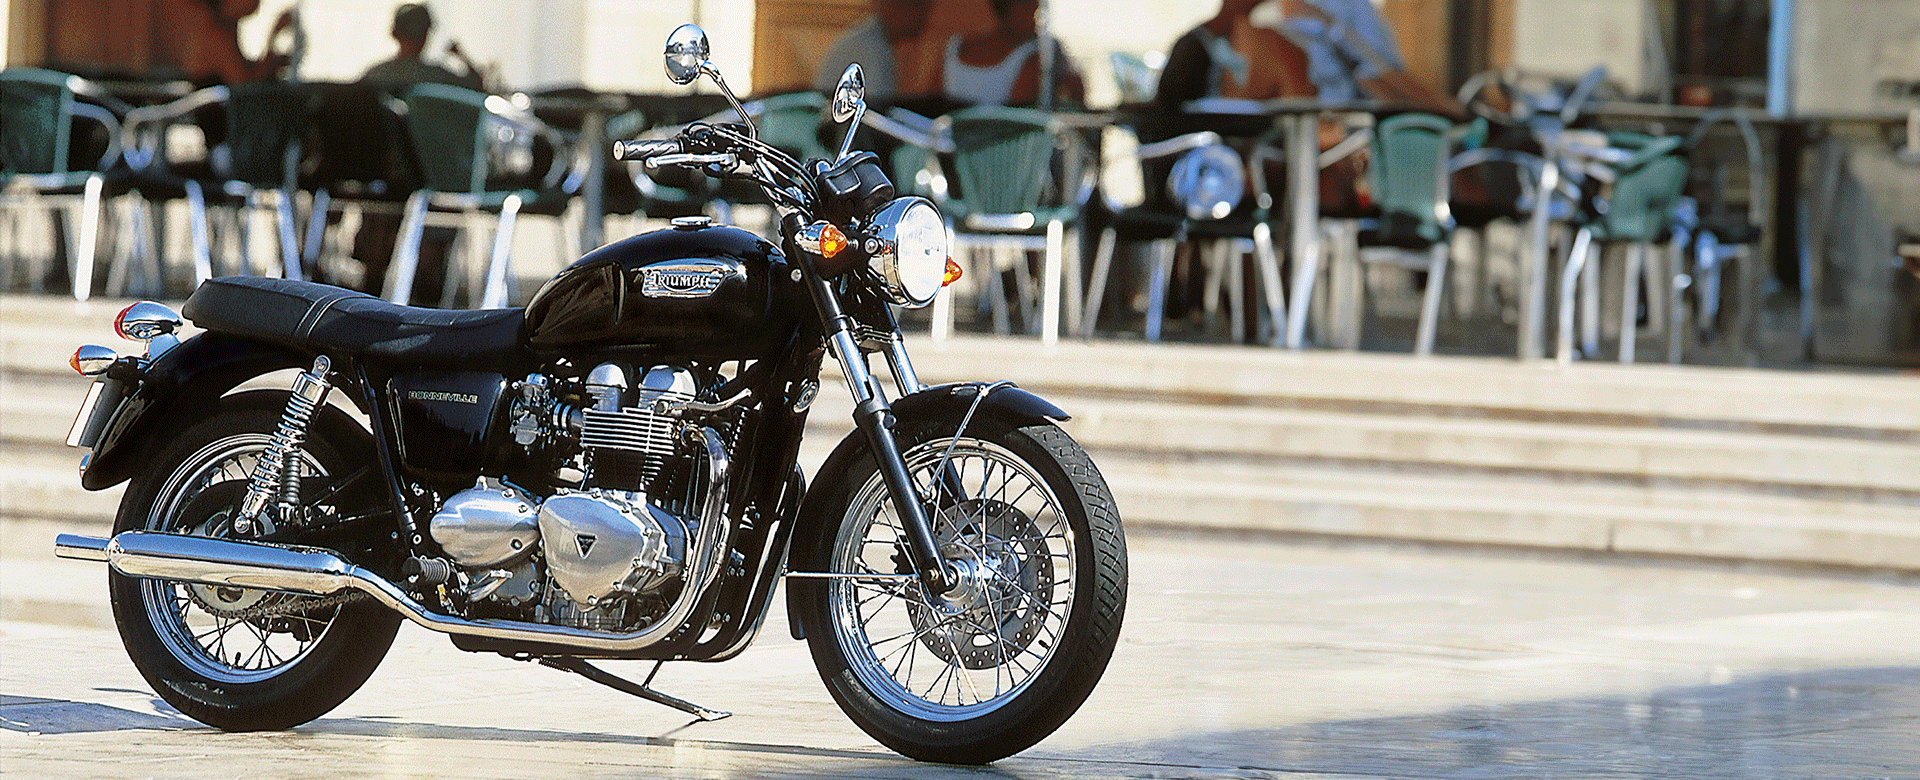 Triumph bonneville motorcycle 